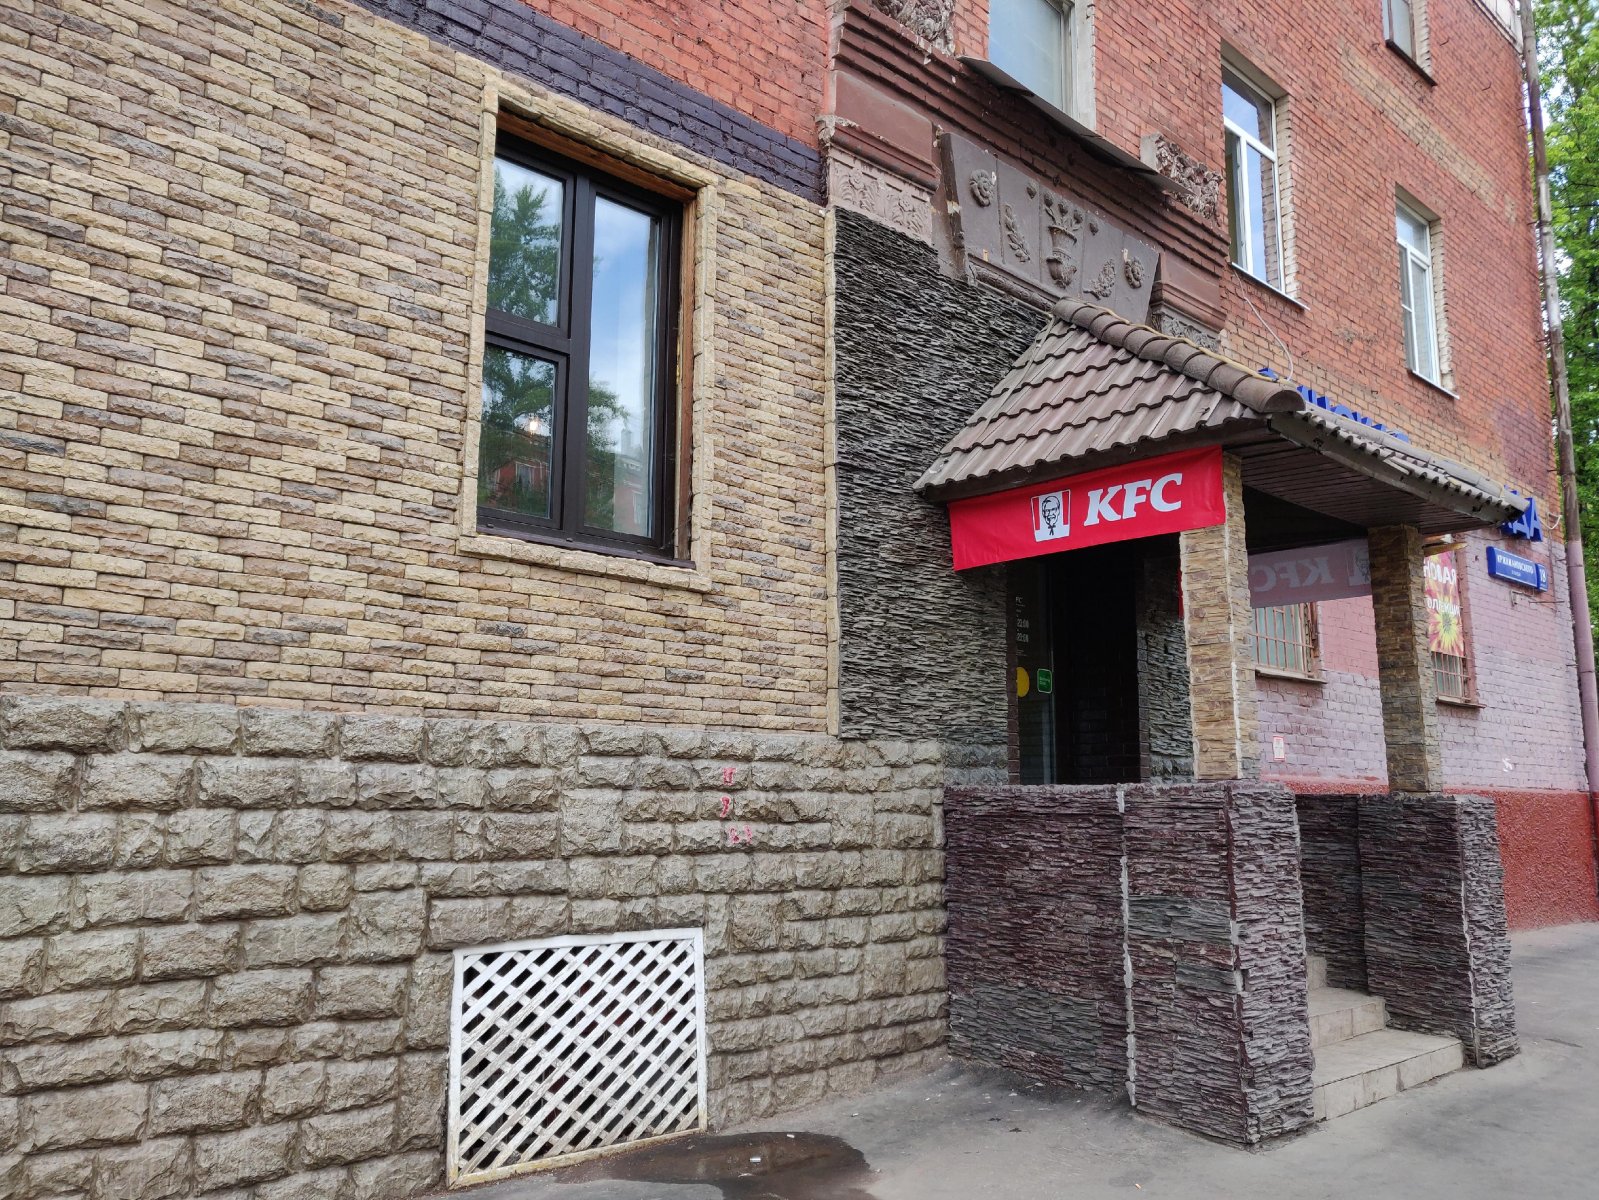 Rostic`s, ресторан быстрого обслуживания, улица Кржижановского, 18 к3, 1 этаж